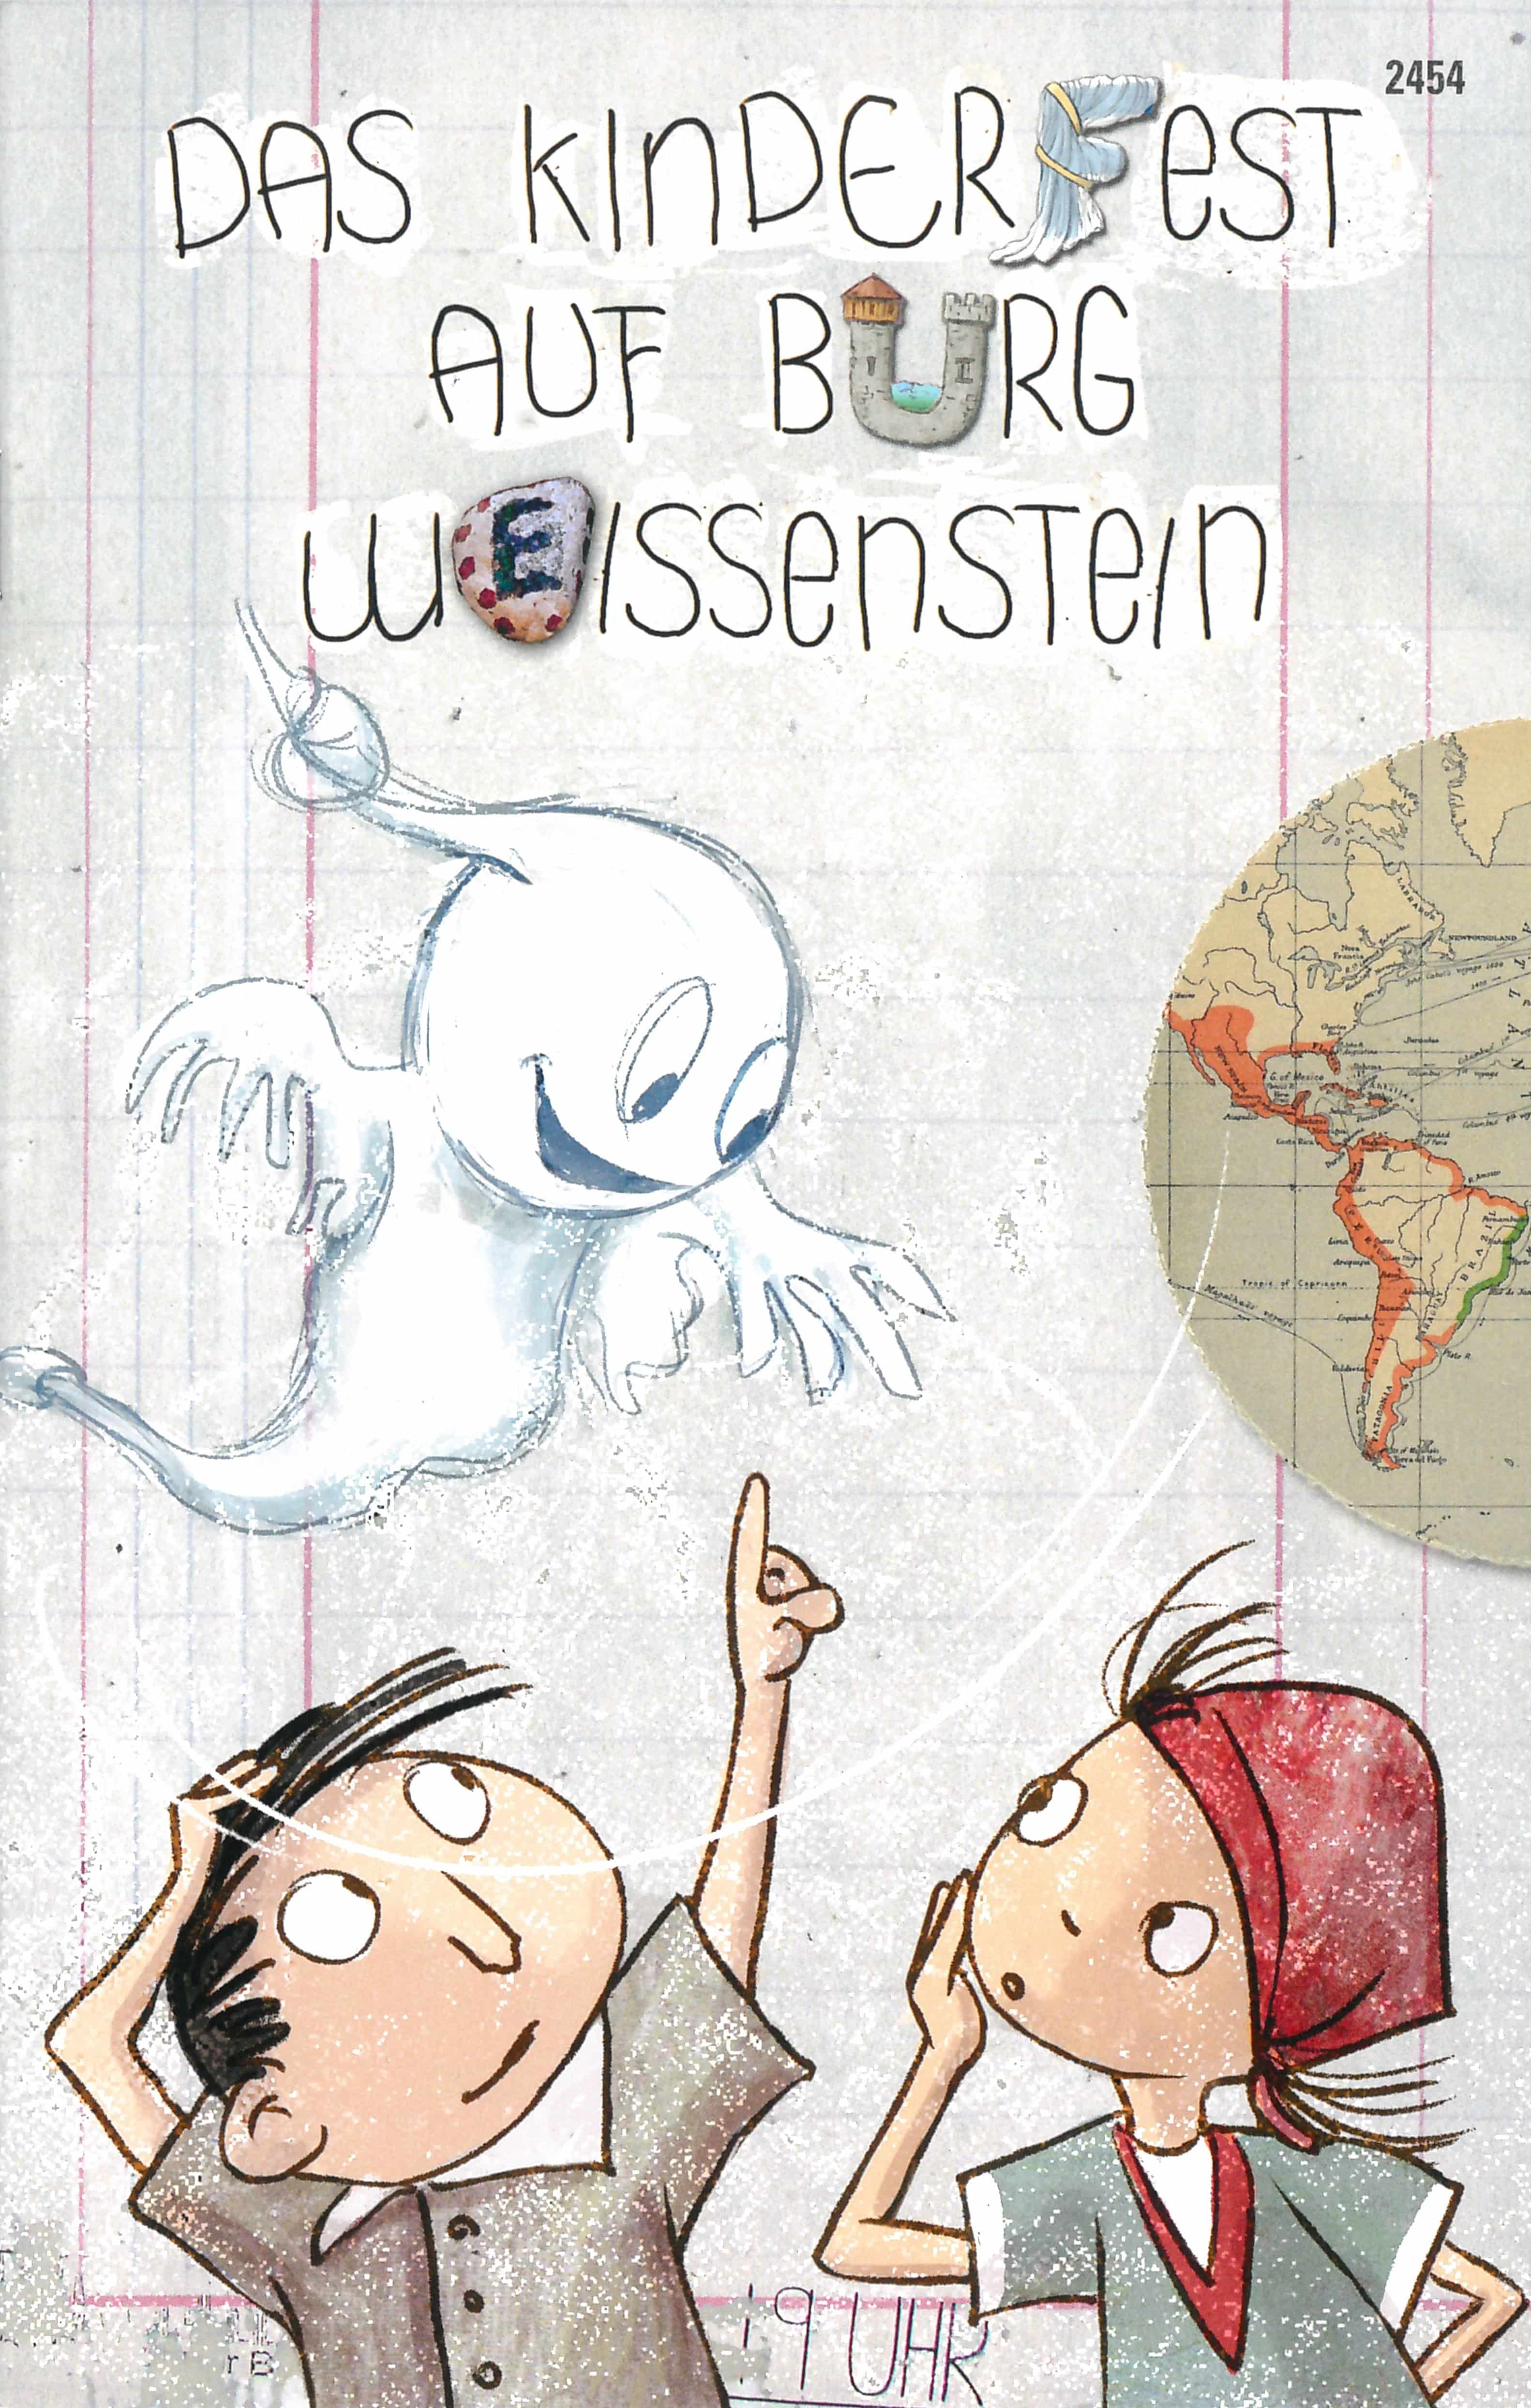 Das Kinderfest auf Burg Weissenstein, ein Kinderbuch von Daniel Badraun, Illustration von Corinne Schroff, SJW, Gespenster